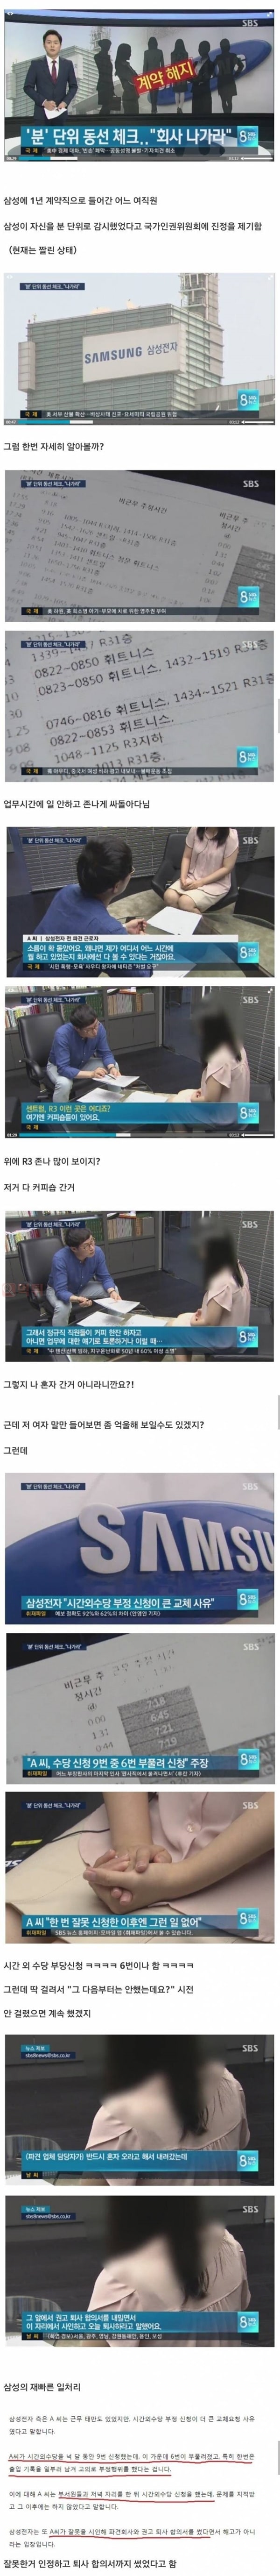 먹튀검증소 유머 삼성이 뭘 잘못했는지 모르겠지만 일단 인터뷰해보는 SBS